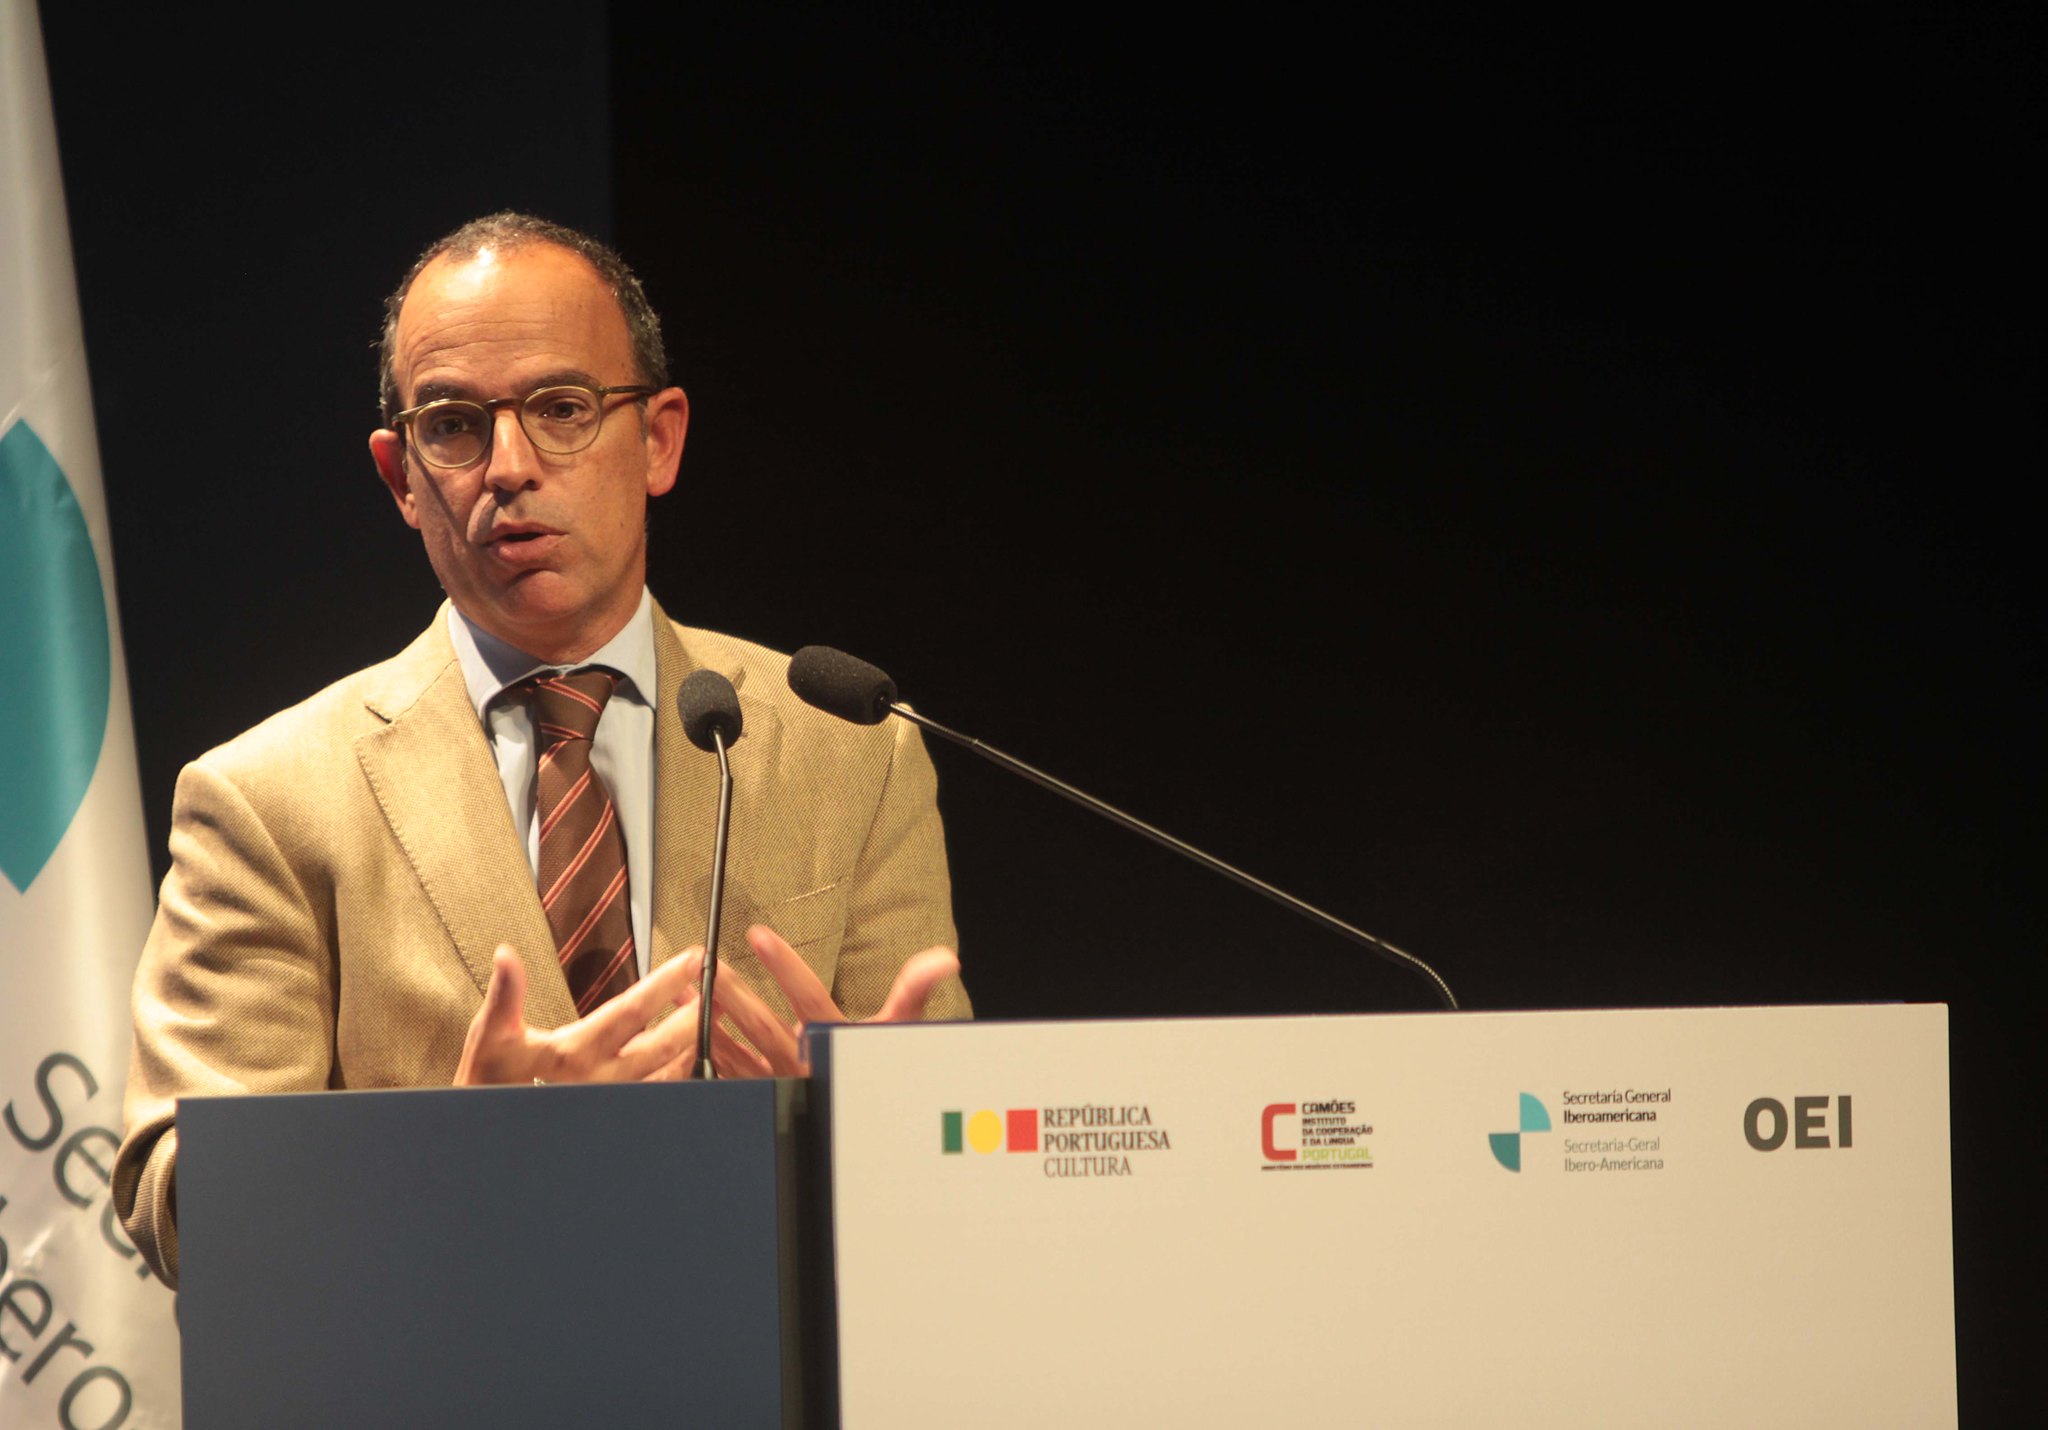 Especialistas de toda Ibero-América reivindicam em Portugal a importância da cultura para o desenvolvimento e o bem-viver